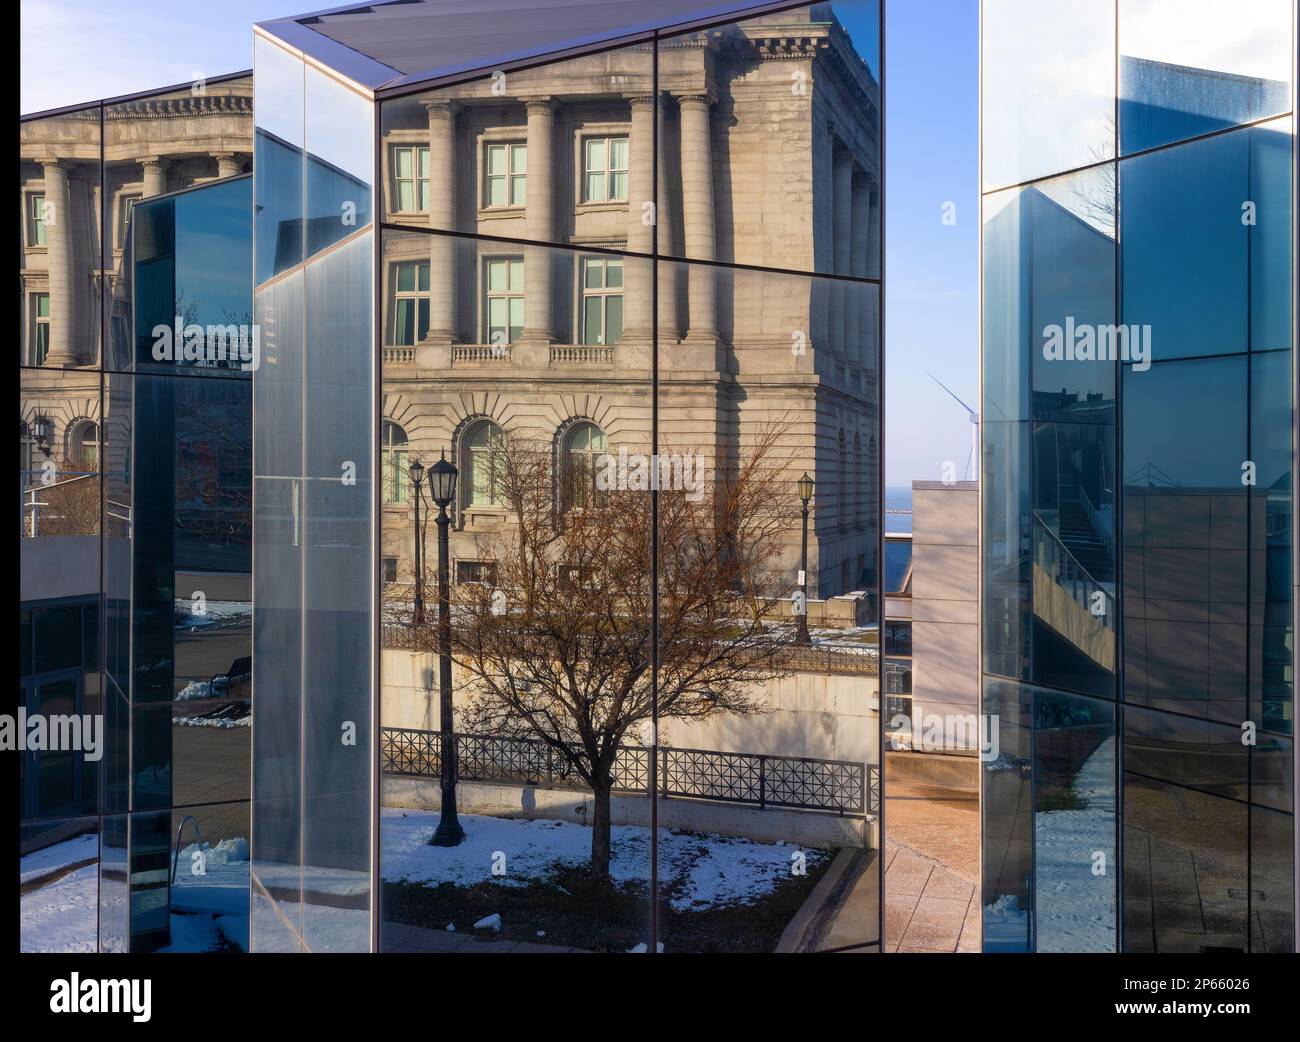 Ein Glasbau in einem öffentlichen Park spiegelt die Strukturen und Szenen in einem öffentlichen Stadtpark in der Innenstadt von Cleveland, Ohio, USA wider. Stockfoto